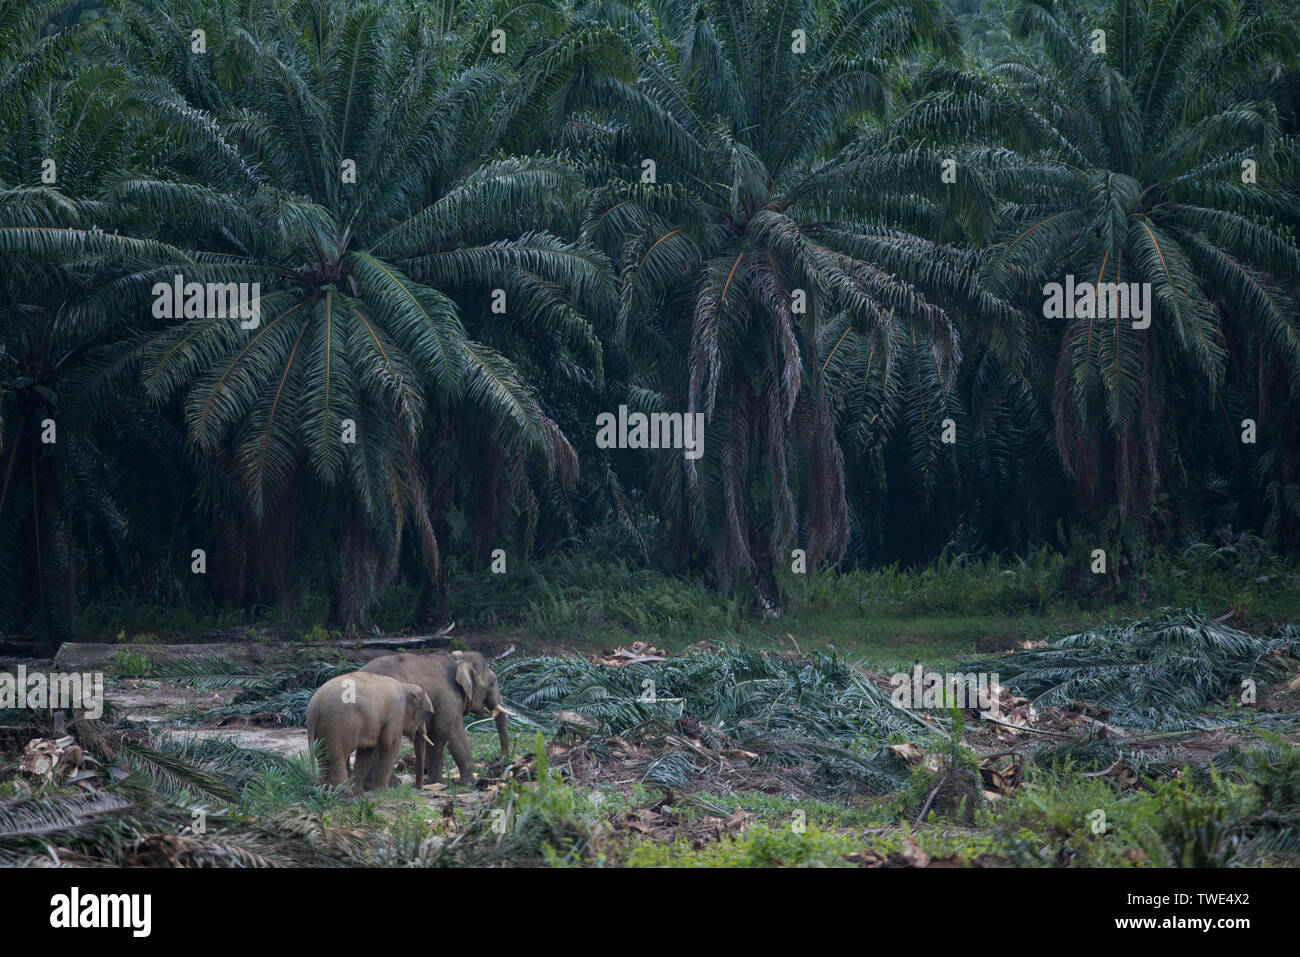 Bornean Elefante, Elephas maximus borneensis, in olio piantagione di palme, vicino Tawau, Sabah Borneo Malesia orientale. Foto Stock